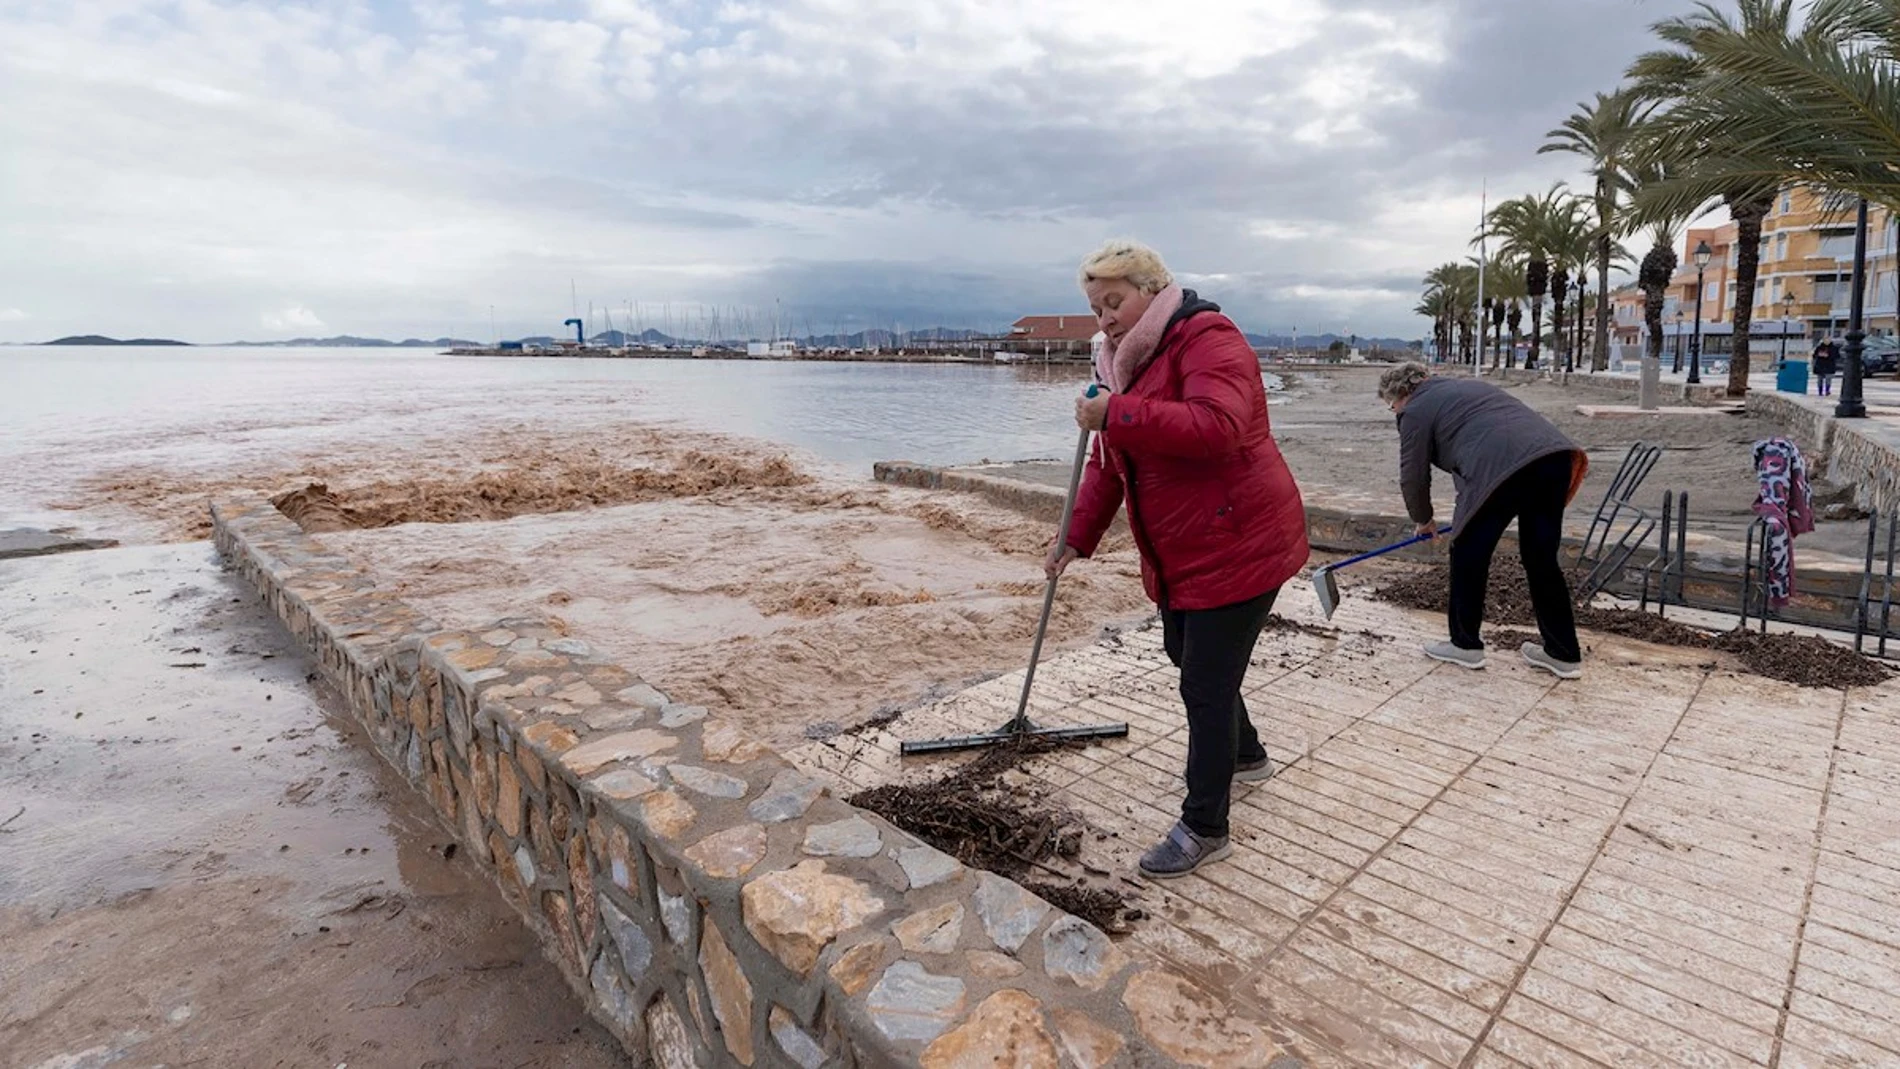 Vecinas de Los Alcázares limpian los destrozos de la borrasca Gloria